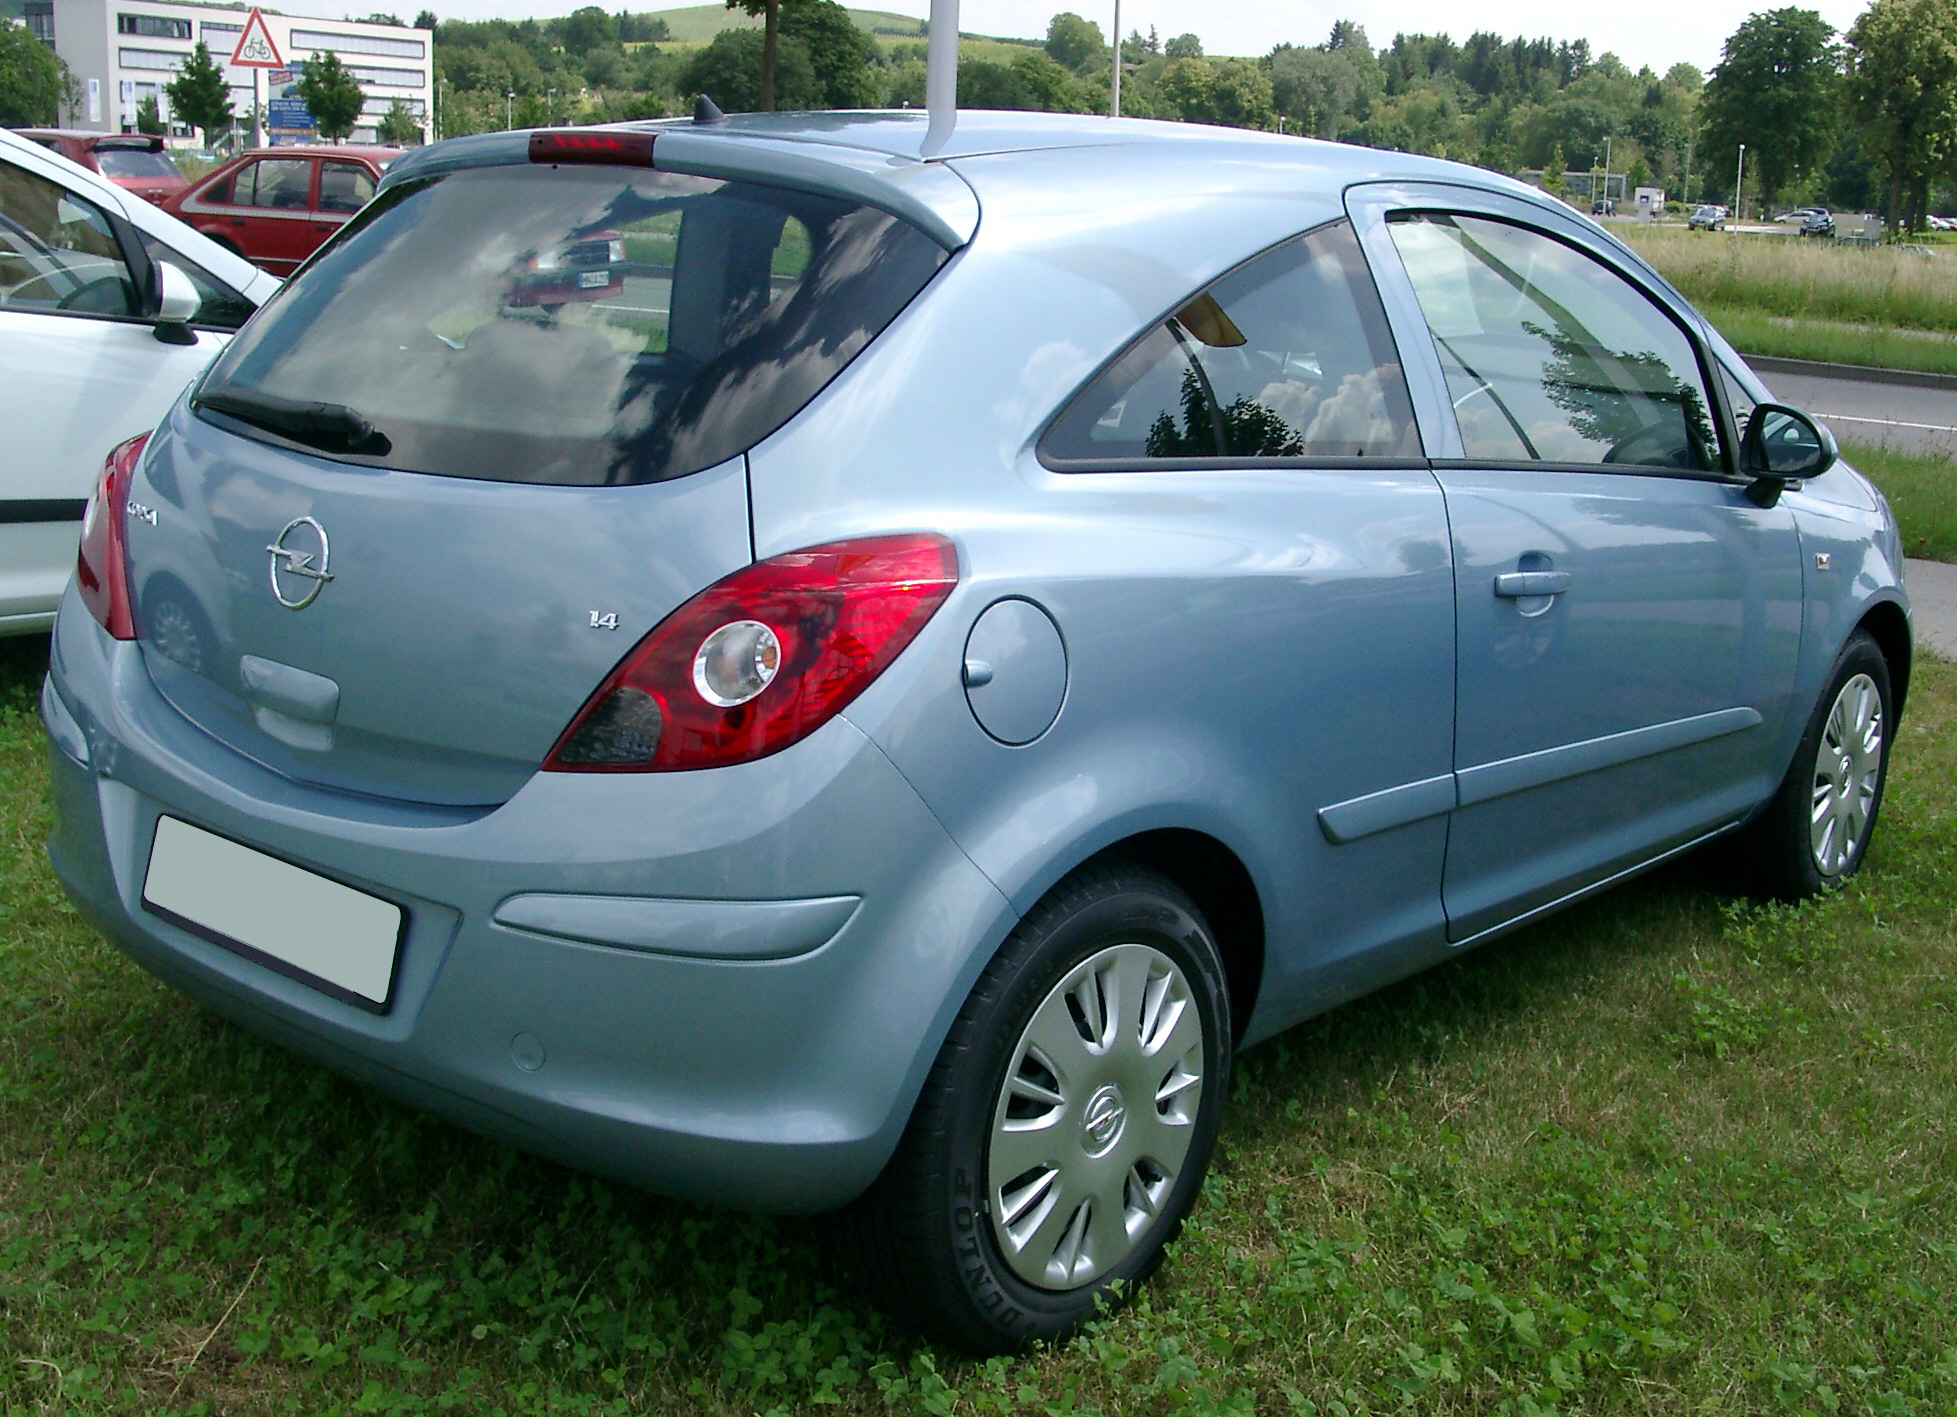 File:Opel Corsa D rear 20070611.jpg - Wikimedia Commons